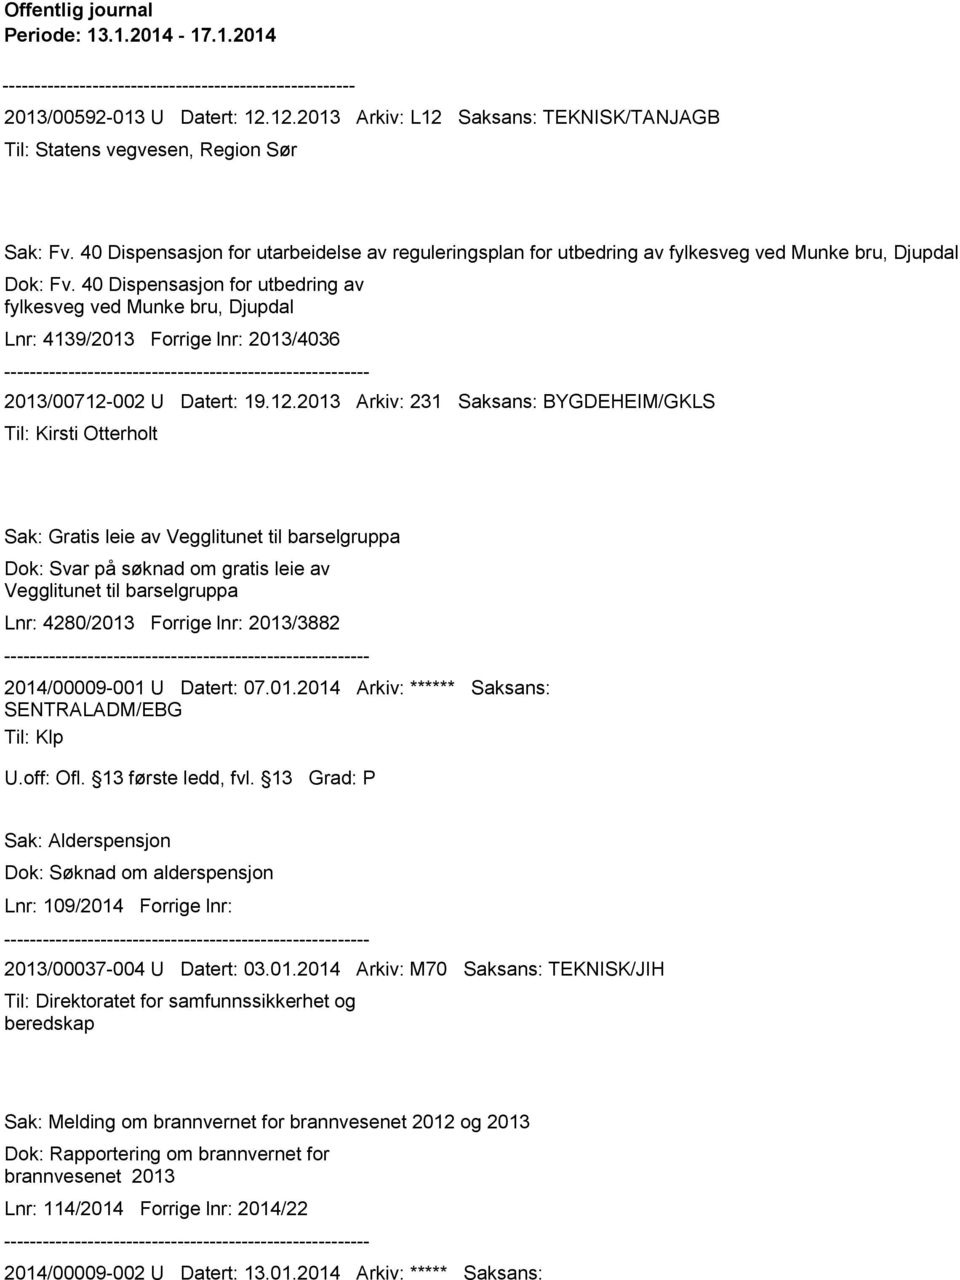 40 Dispensasjon for utbedring av fylkesveg ved Munke bru, Djupdal Lnr: 4139/2013 Forrige lnr: 2013/4036 2013/00712-